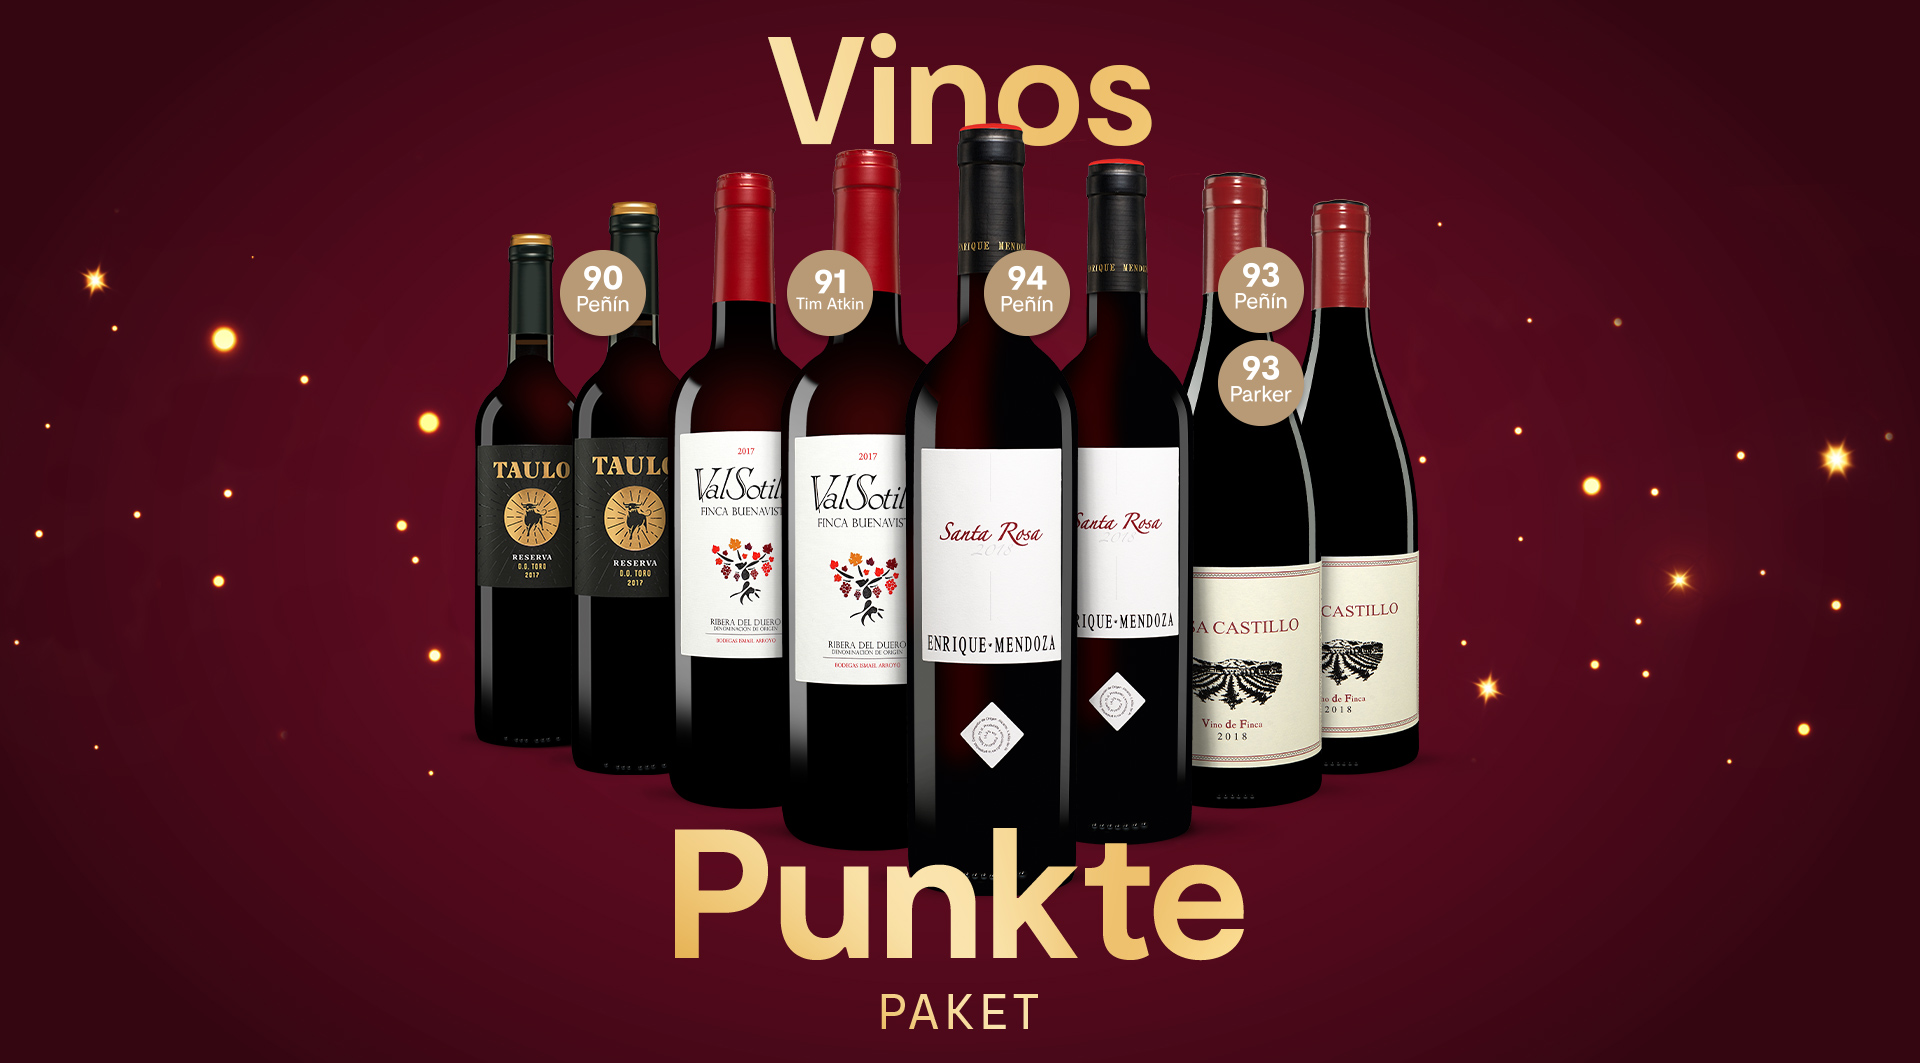 Vinos Punkte Paket mit 4x2 prämierten Rotweinen